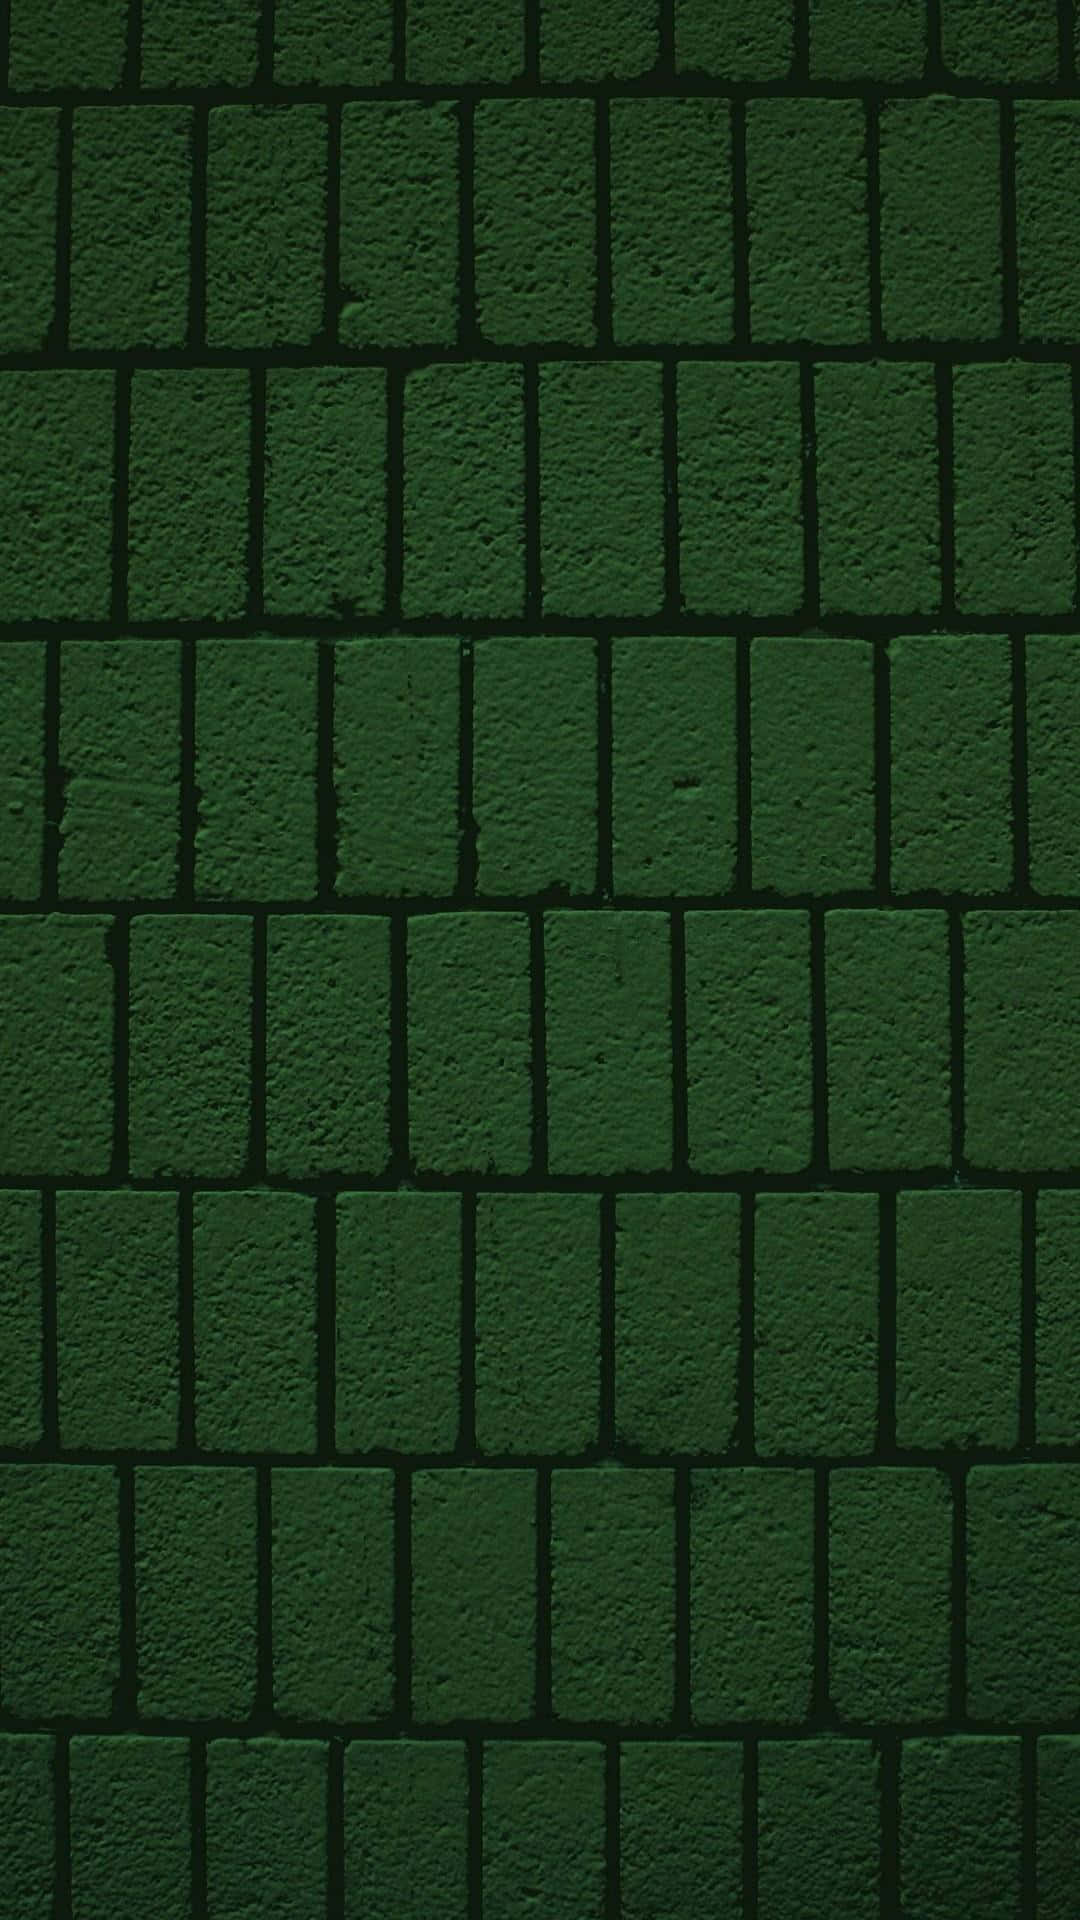 Betonensie Ihren Stil Mit Einem Stilvollen Olivgrünen Iphone. Wallpaper